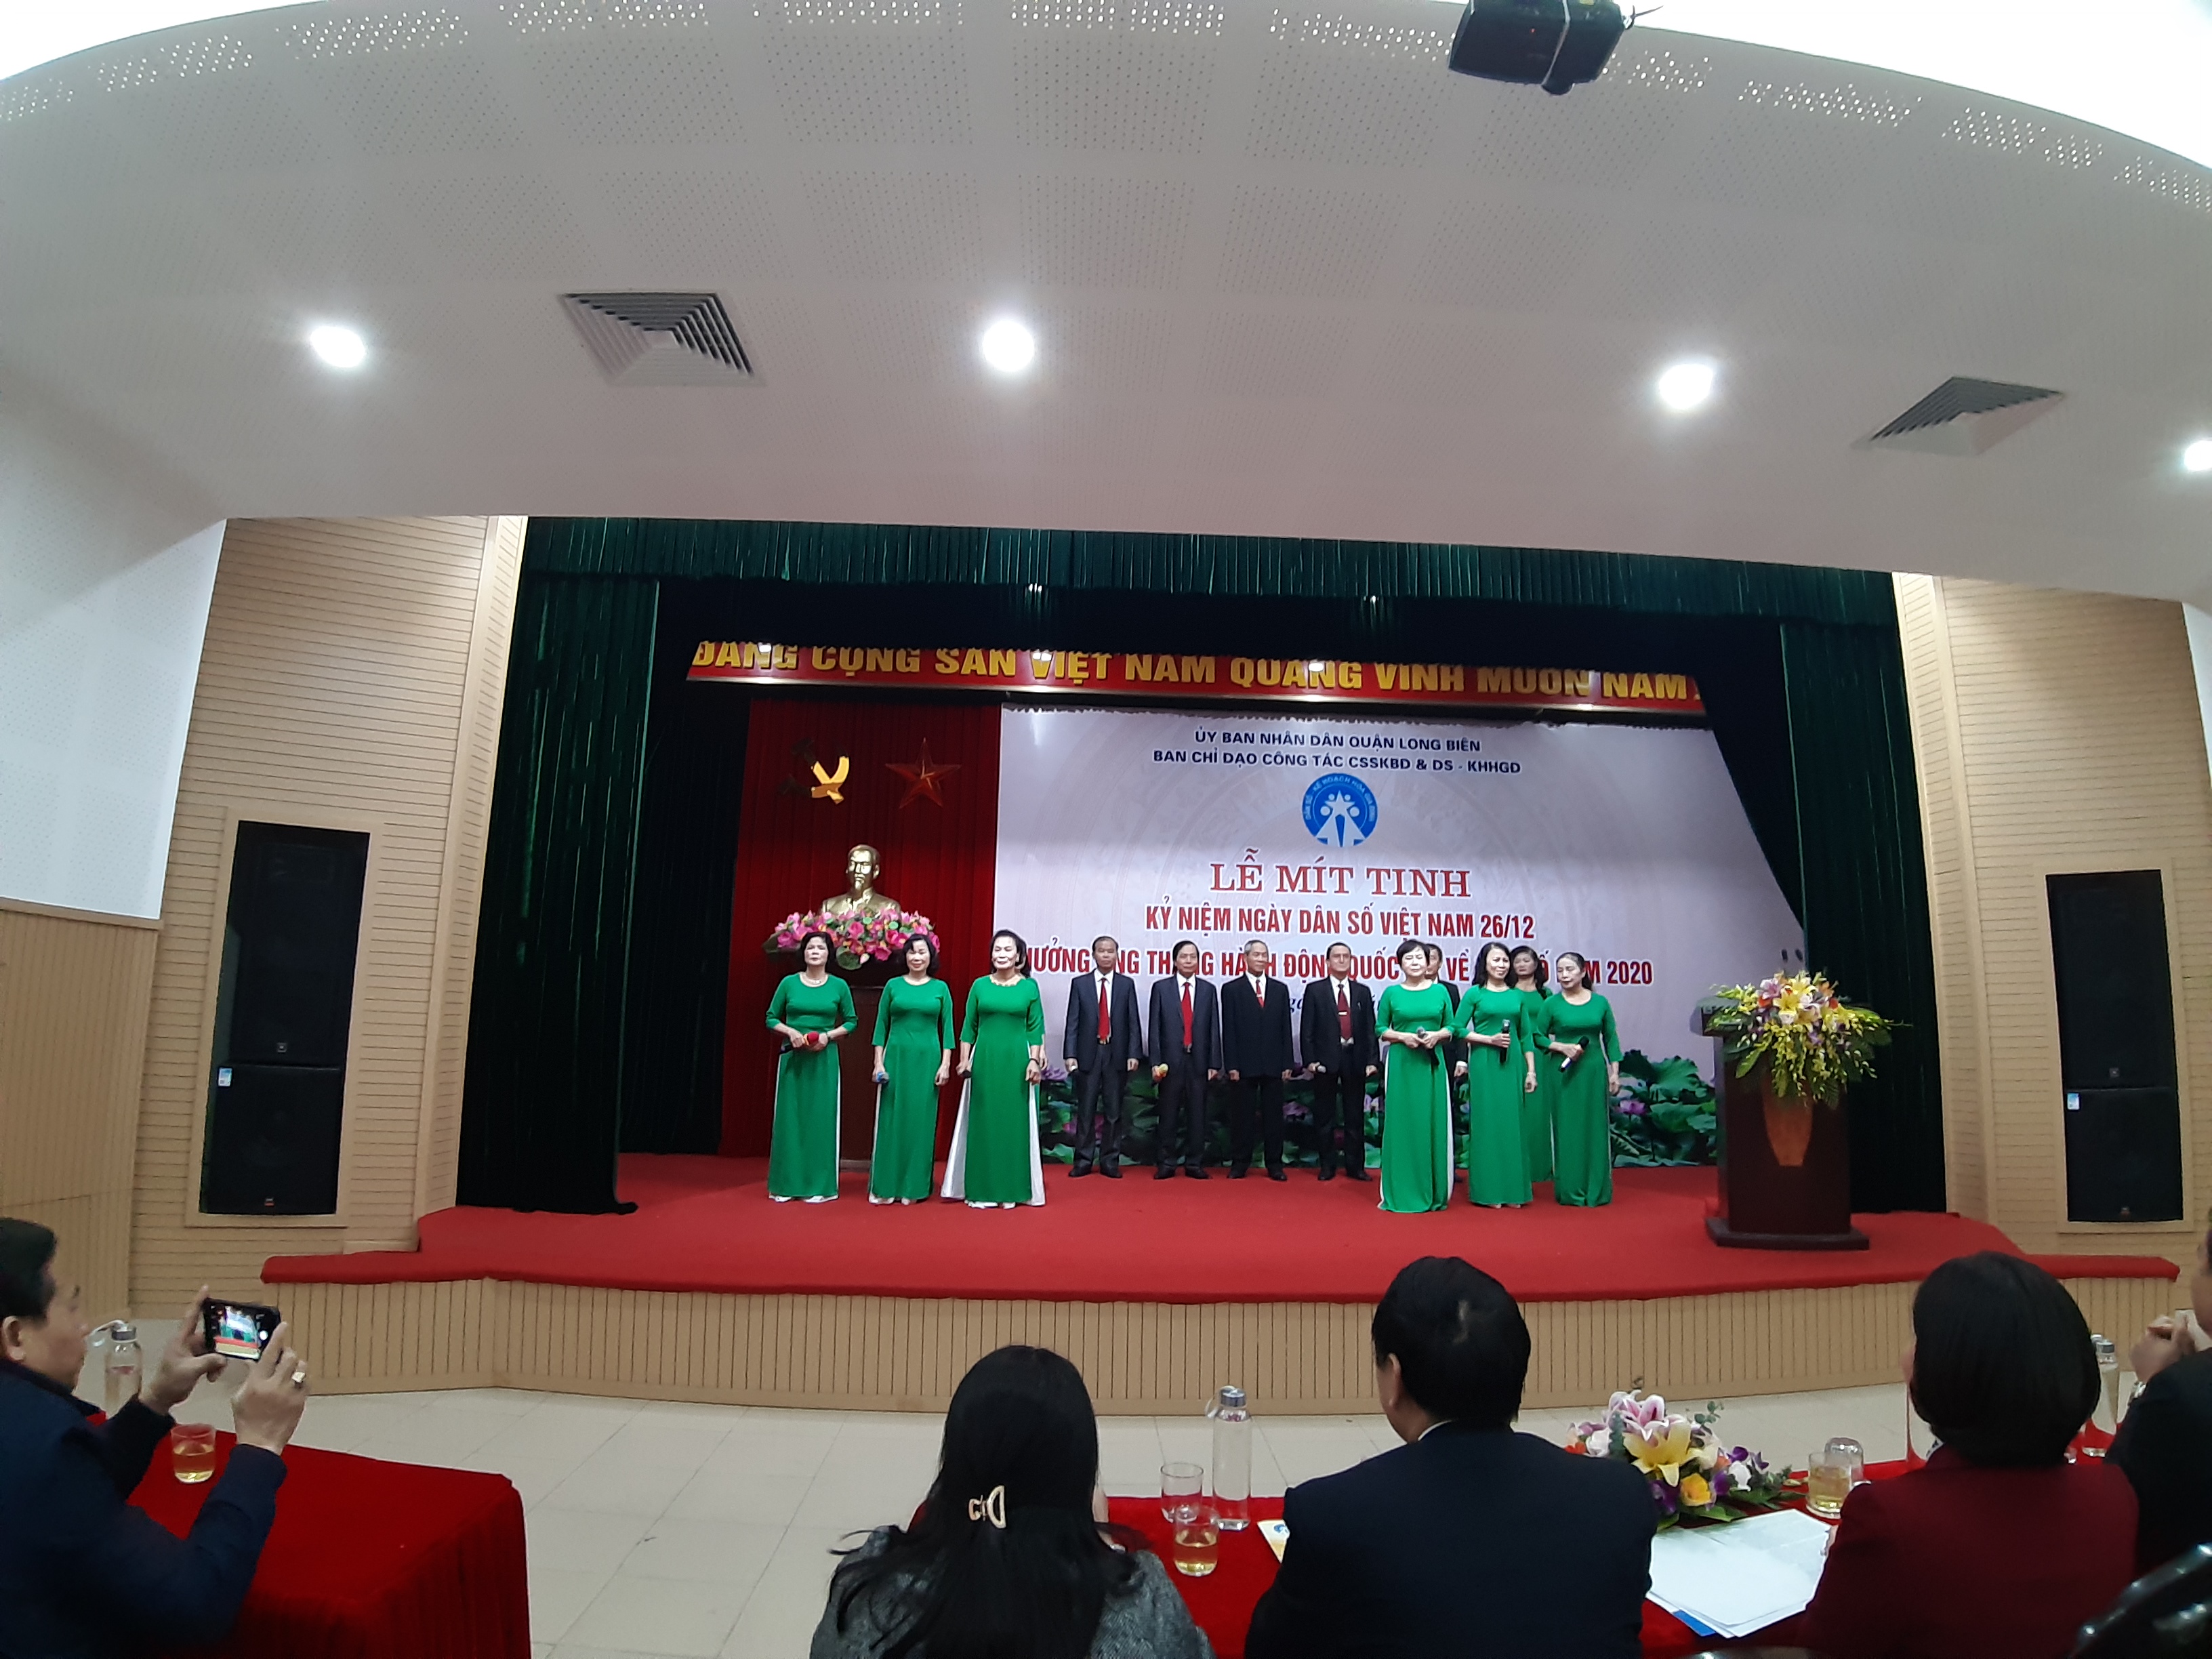 Long Biên tổ chức Lễ Mít tinh kỷ niệm ngày Dân số Việt Nam 26/12 Hưởng ứng Tháng hành động quốc gia về Dân số năm 2020